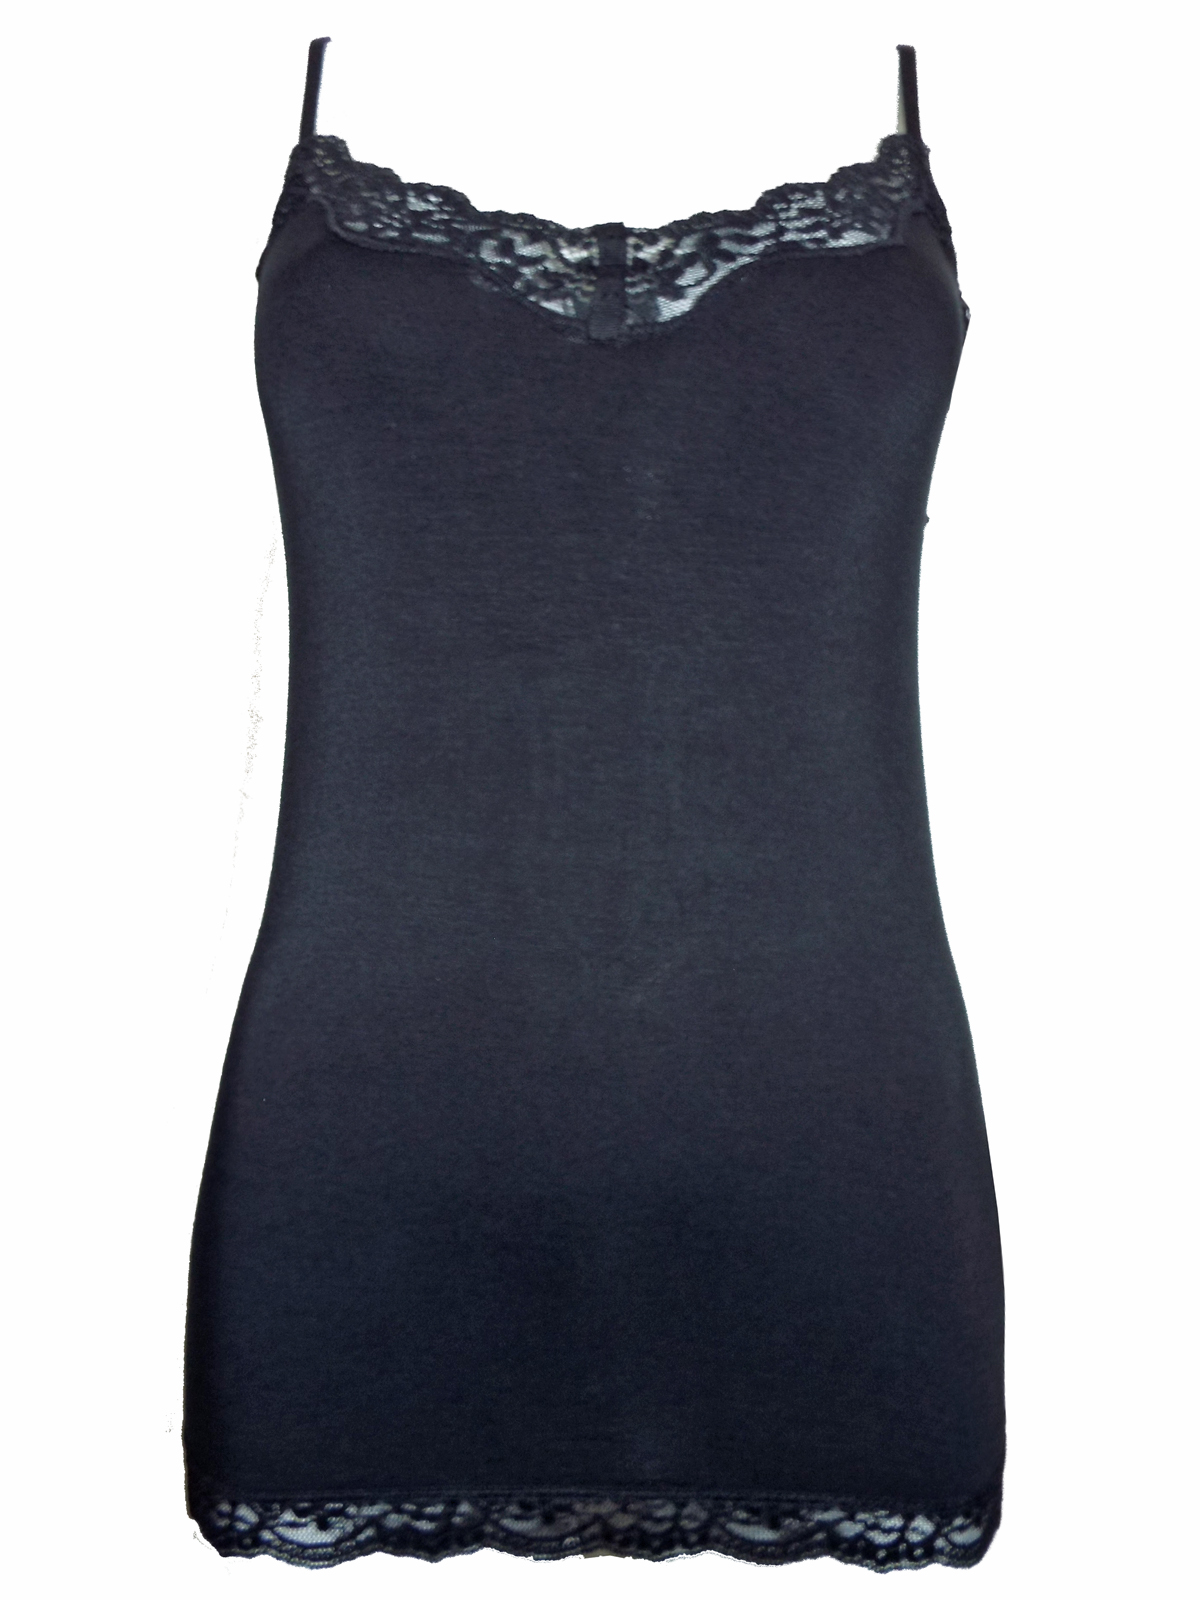 Marks and Spencer - - M&5 BLACK Lace Trim Secret Support Vest Top ...